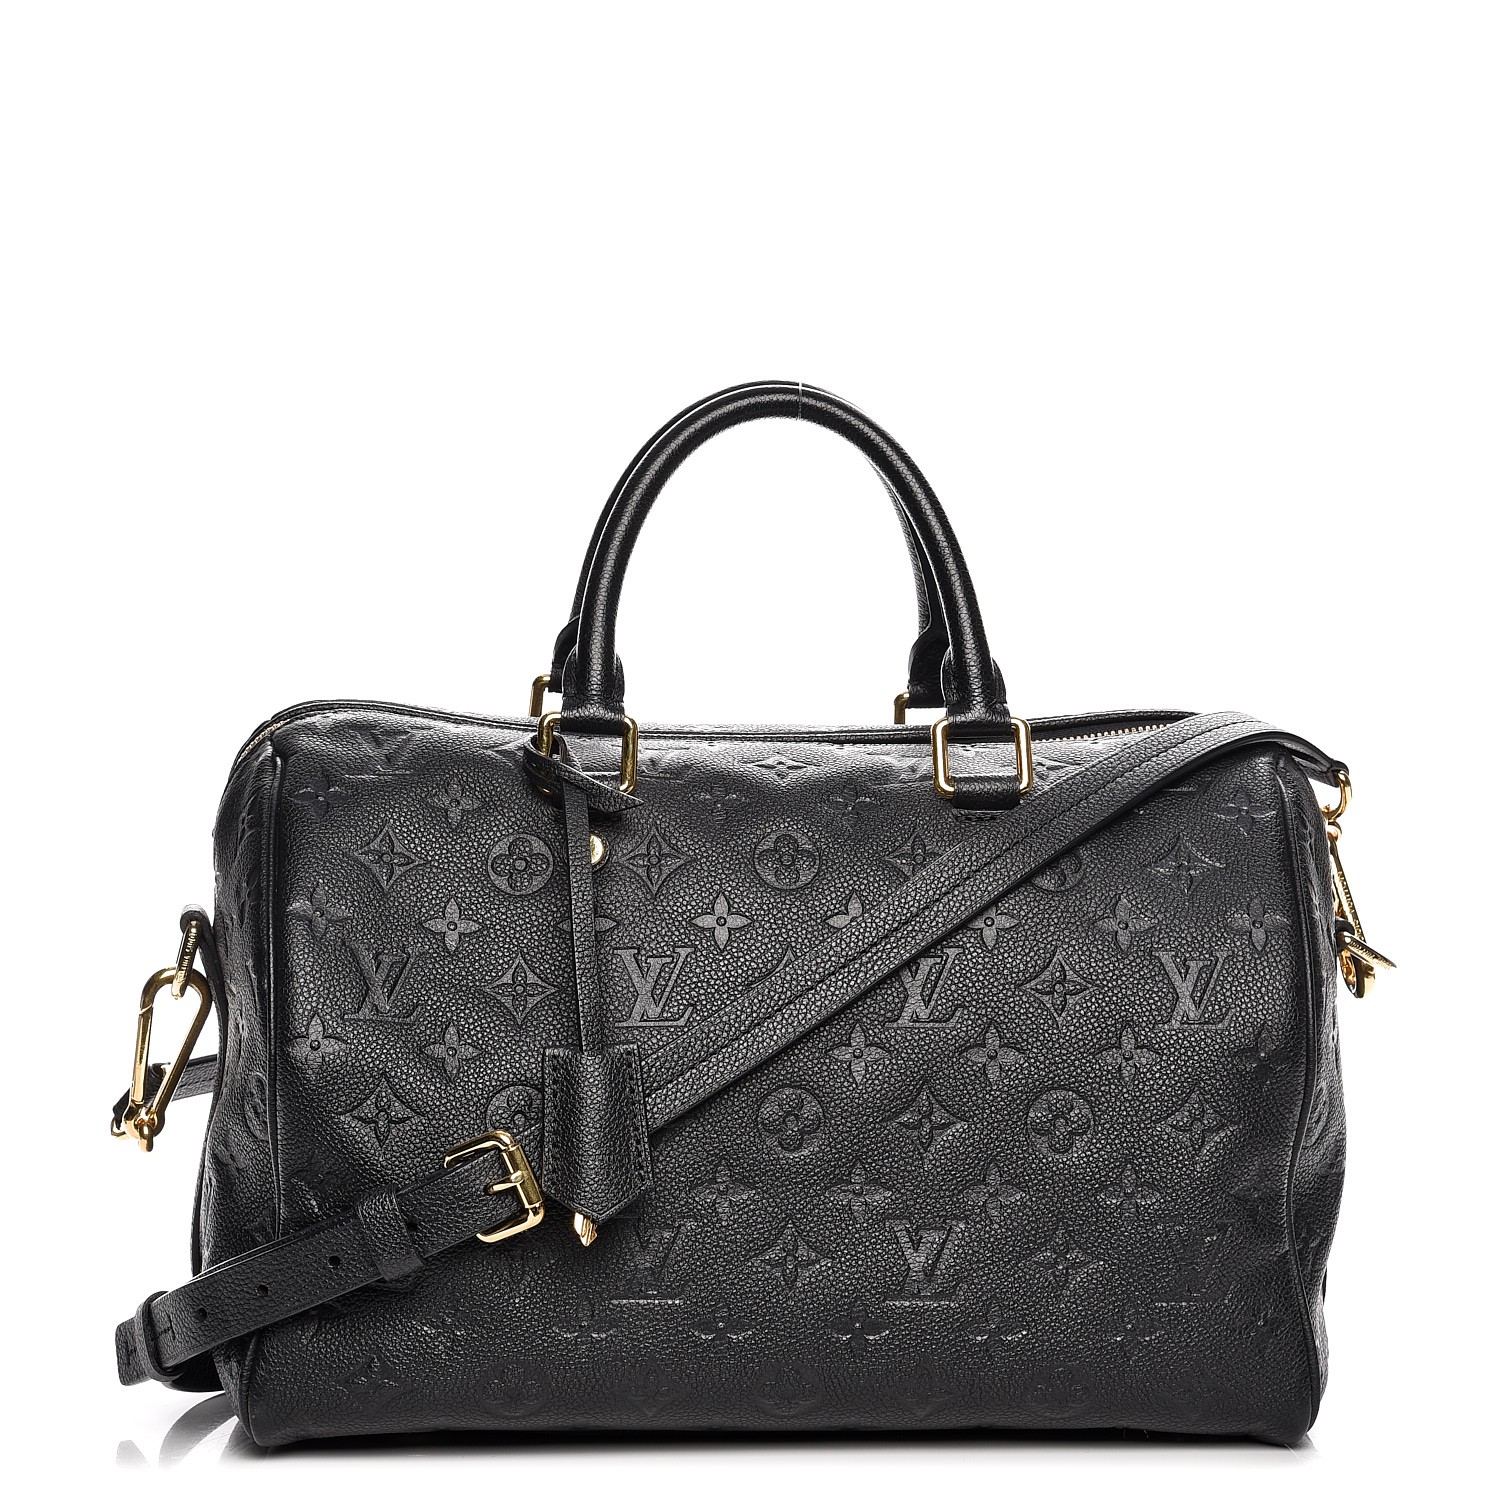 Auth Louis Vuitton Monogram Empreinte 2way Bag Speedy Bandouliere